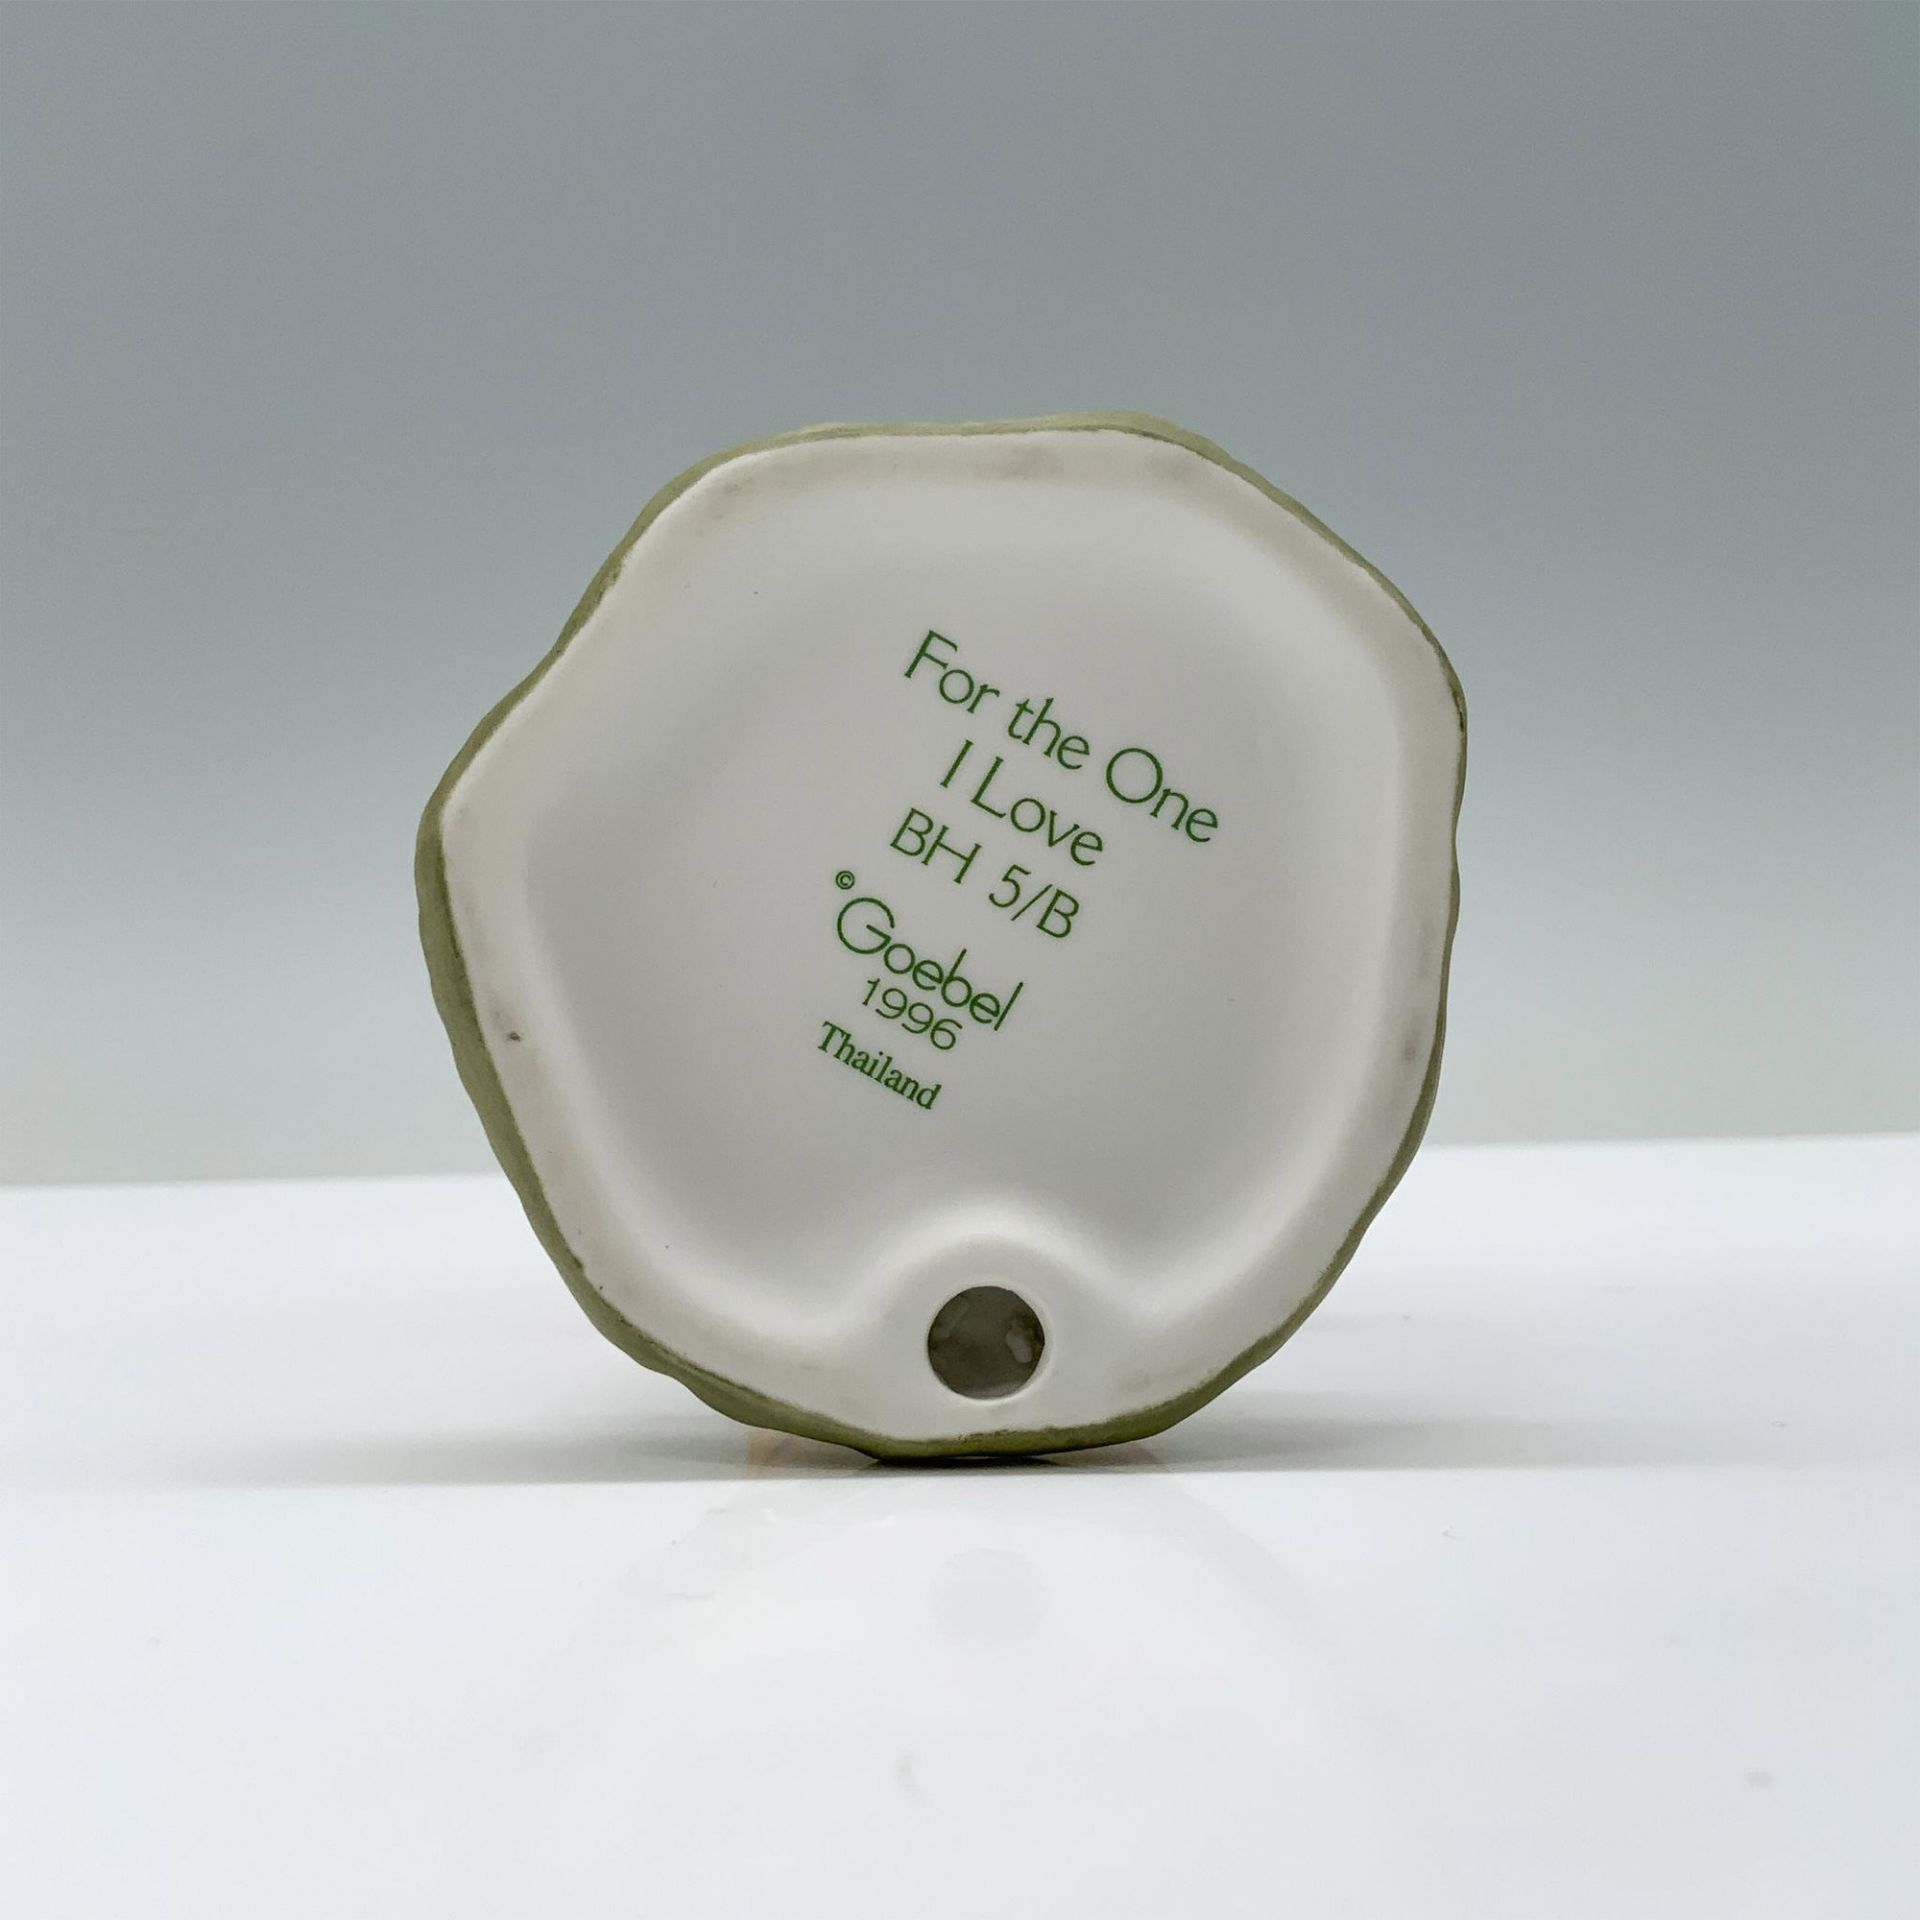 Goebel Hummel Porcelain Figurine, For the One I Love - Image 3 of 3